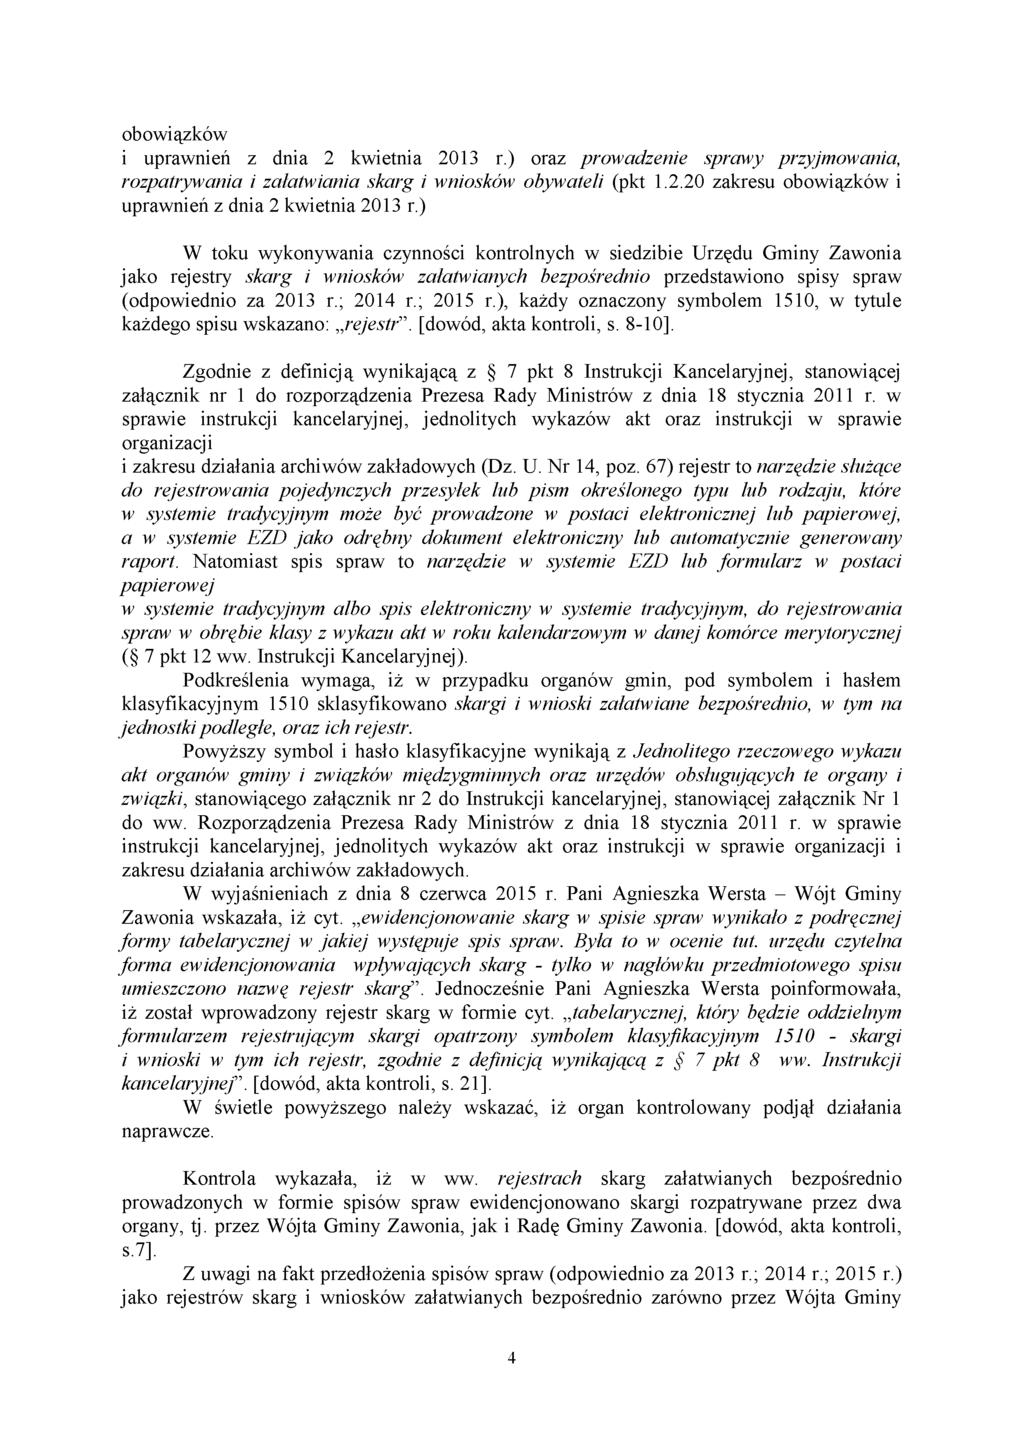 obowiązków i uprawnień z dnia 2 kwietnia 2013 r.) oraz prowadzenie sprawy przyjmowania, rozpatrywania i załatwiania skarg i wniosków obywateli (pkt 1.2.20 zakresu obowiązków i uprawnień z dnia 2 kwietnia 2013 r.